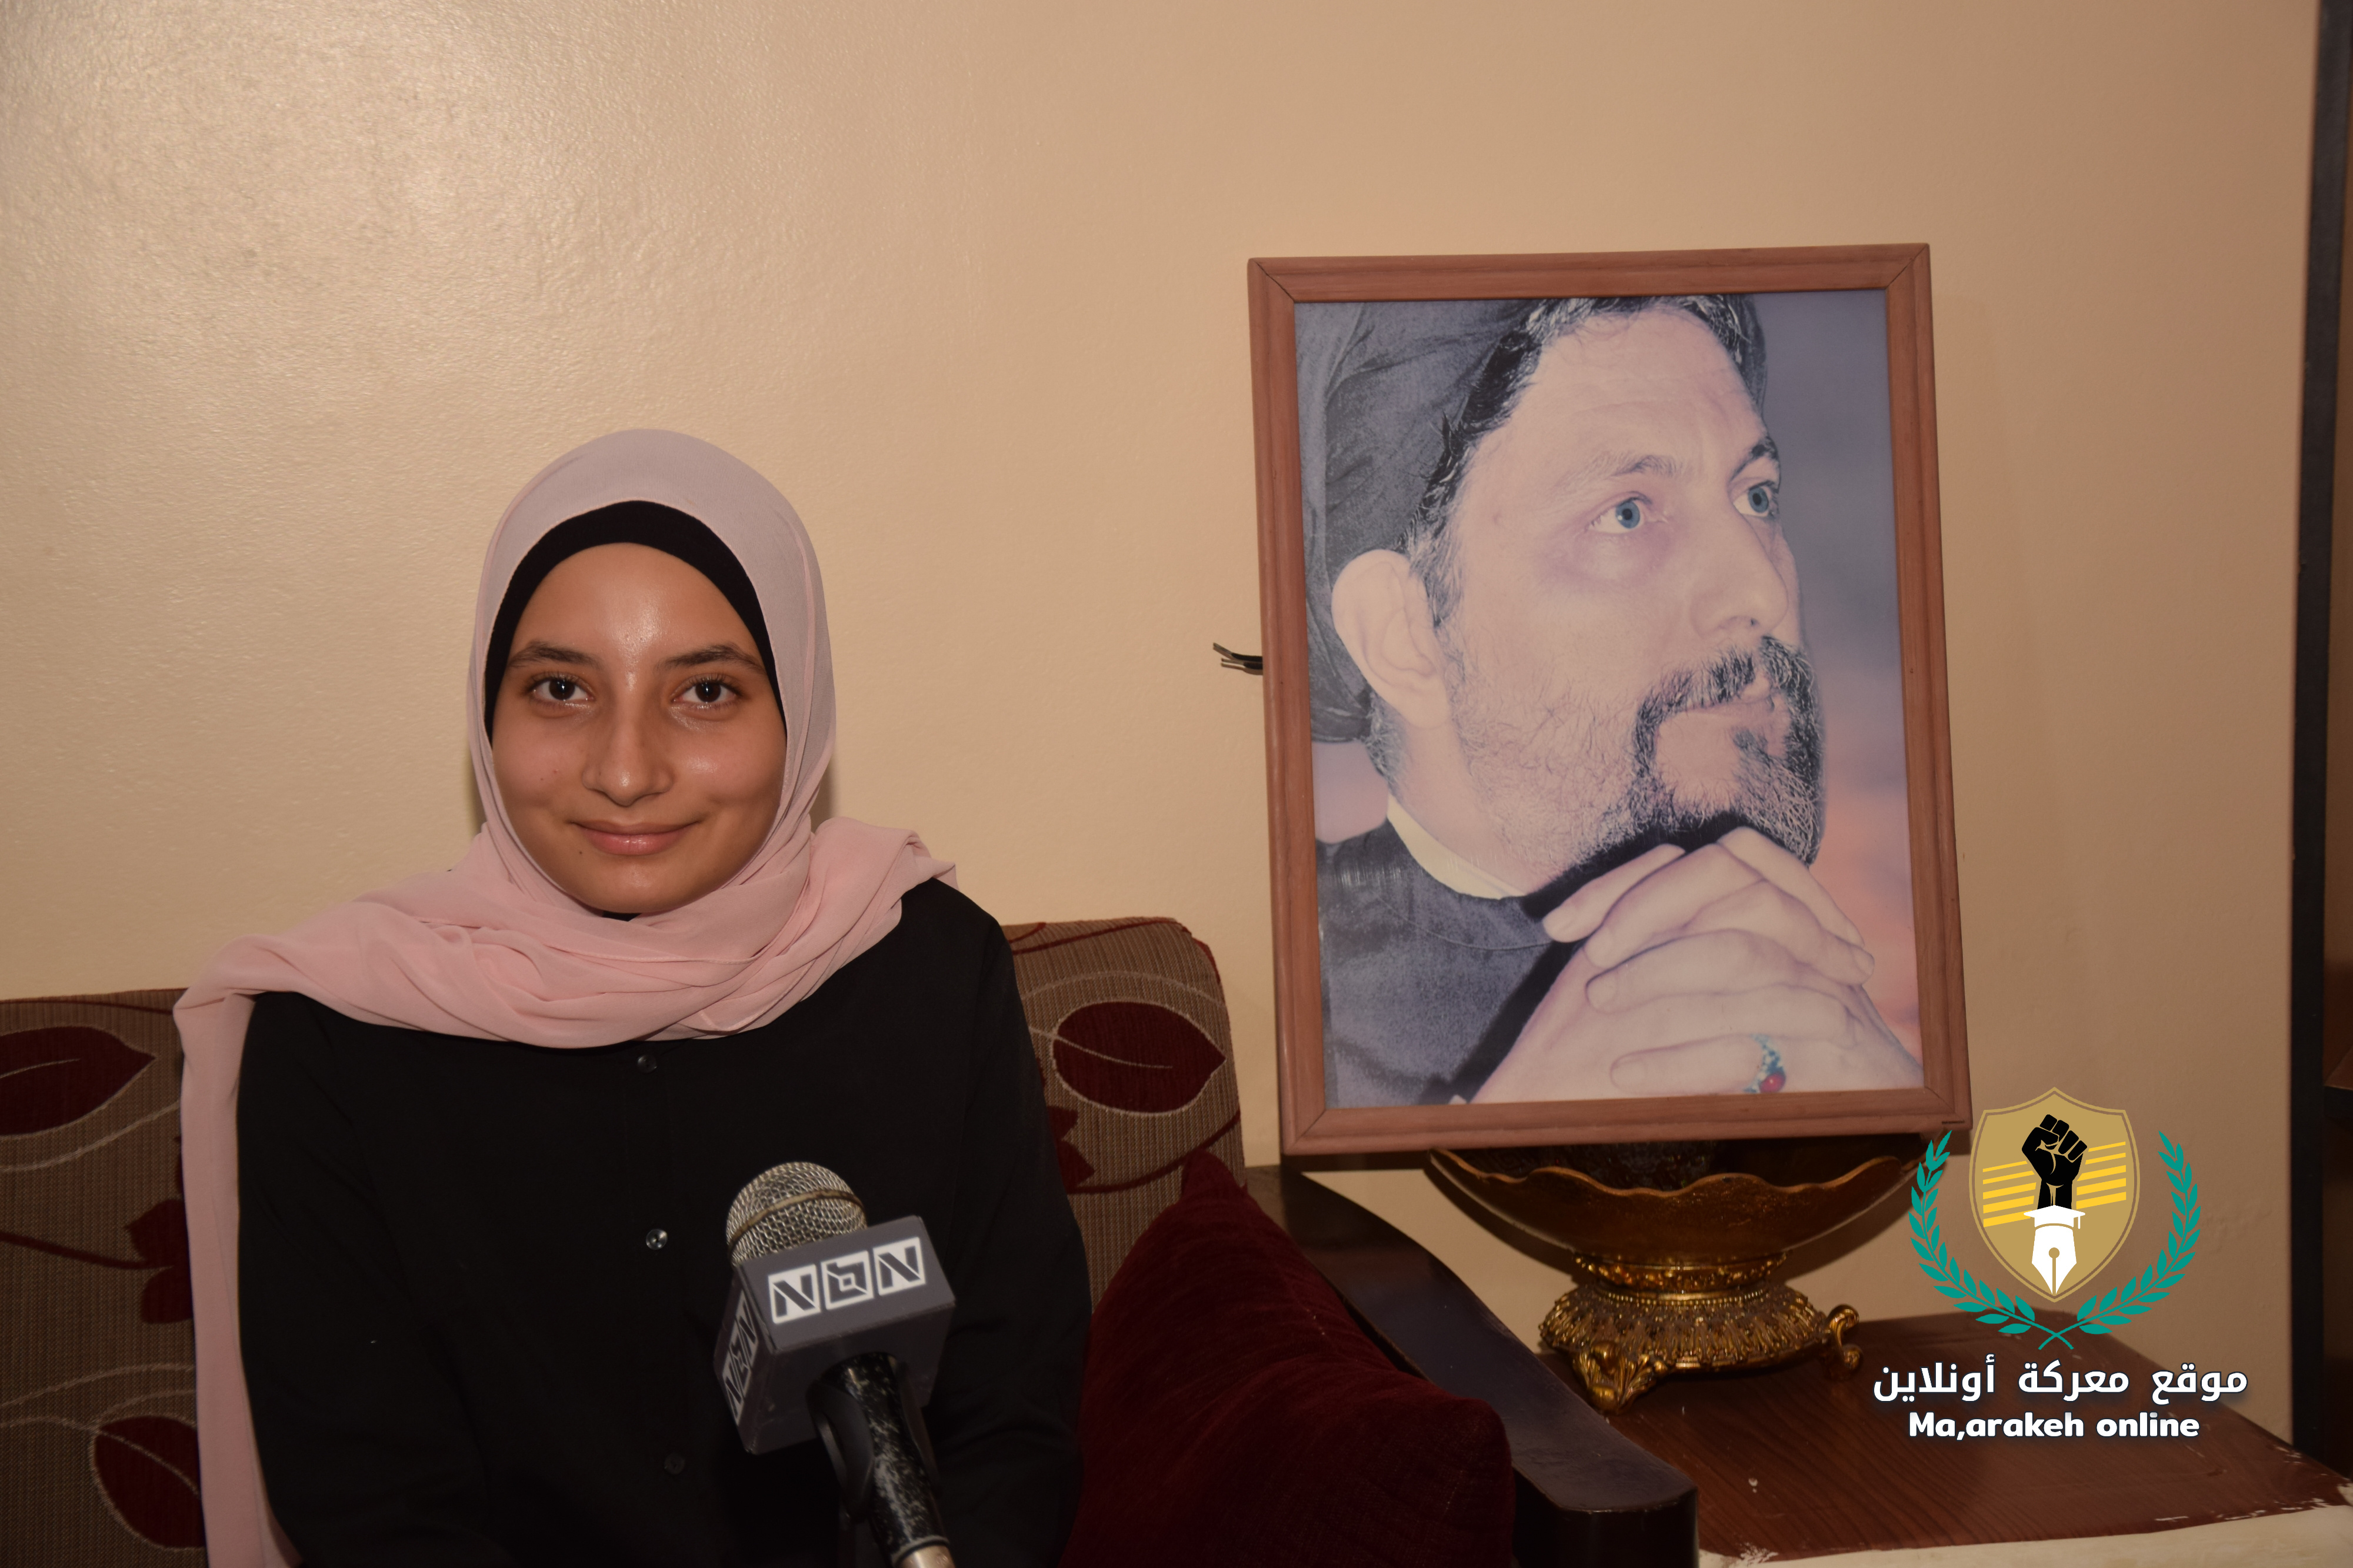 الطالبة الاء سلمان : اهدي نجاحي للامام المغيب السيد موسى الصدر الذي تحمل مدرستي اسمه